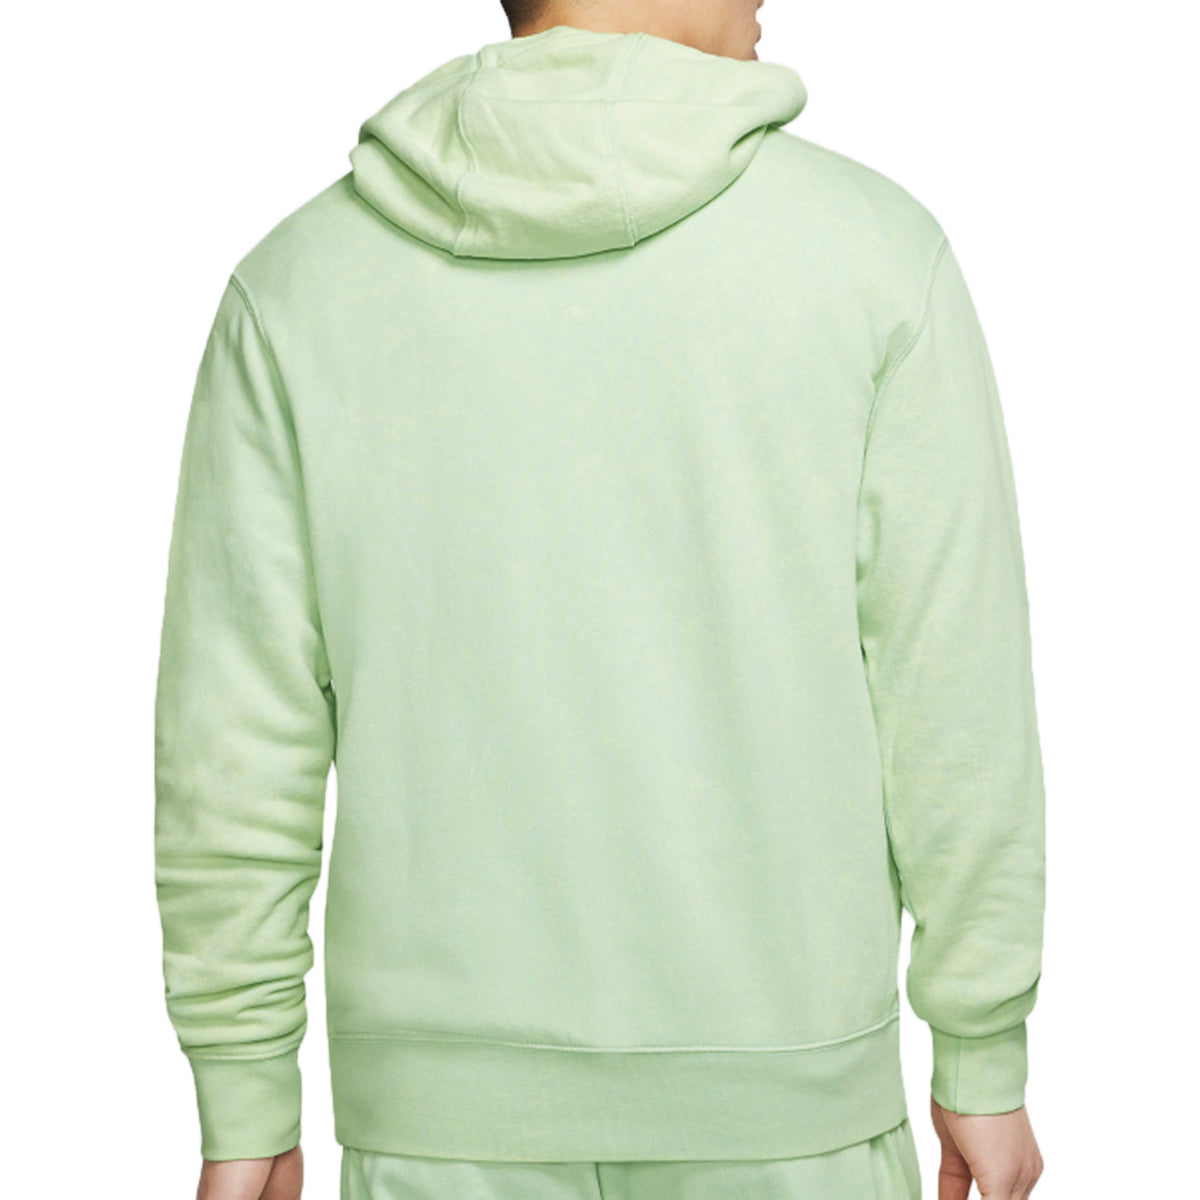 Nike Sportswear Jdi Pullover Hoodie Mens Style : Cj4566